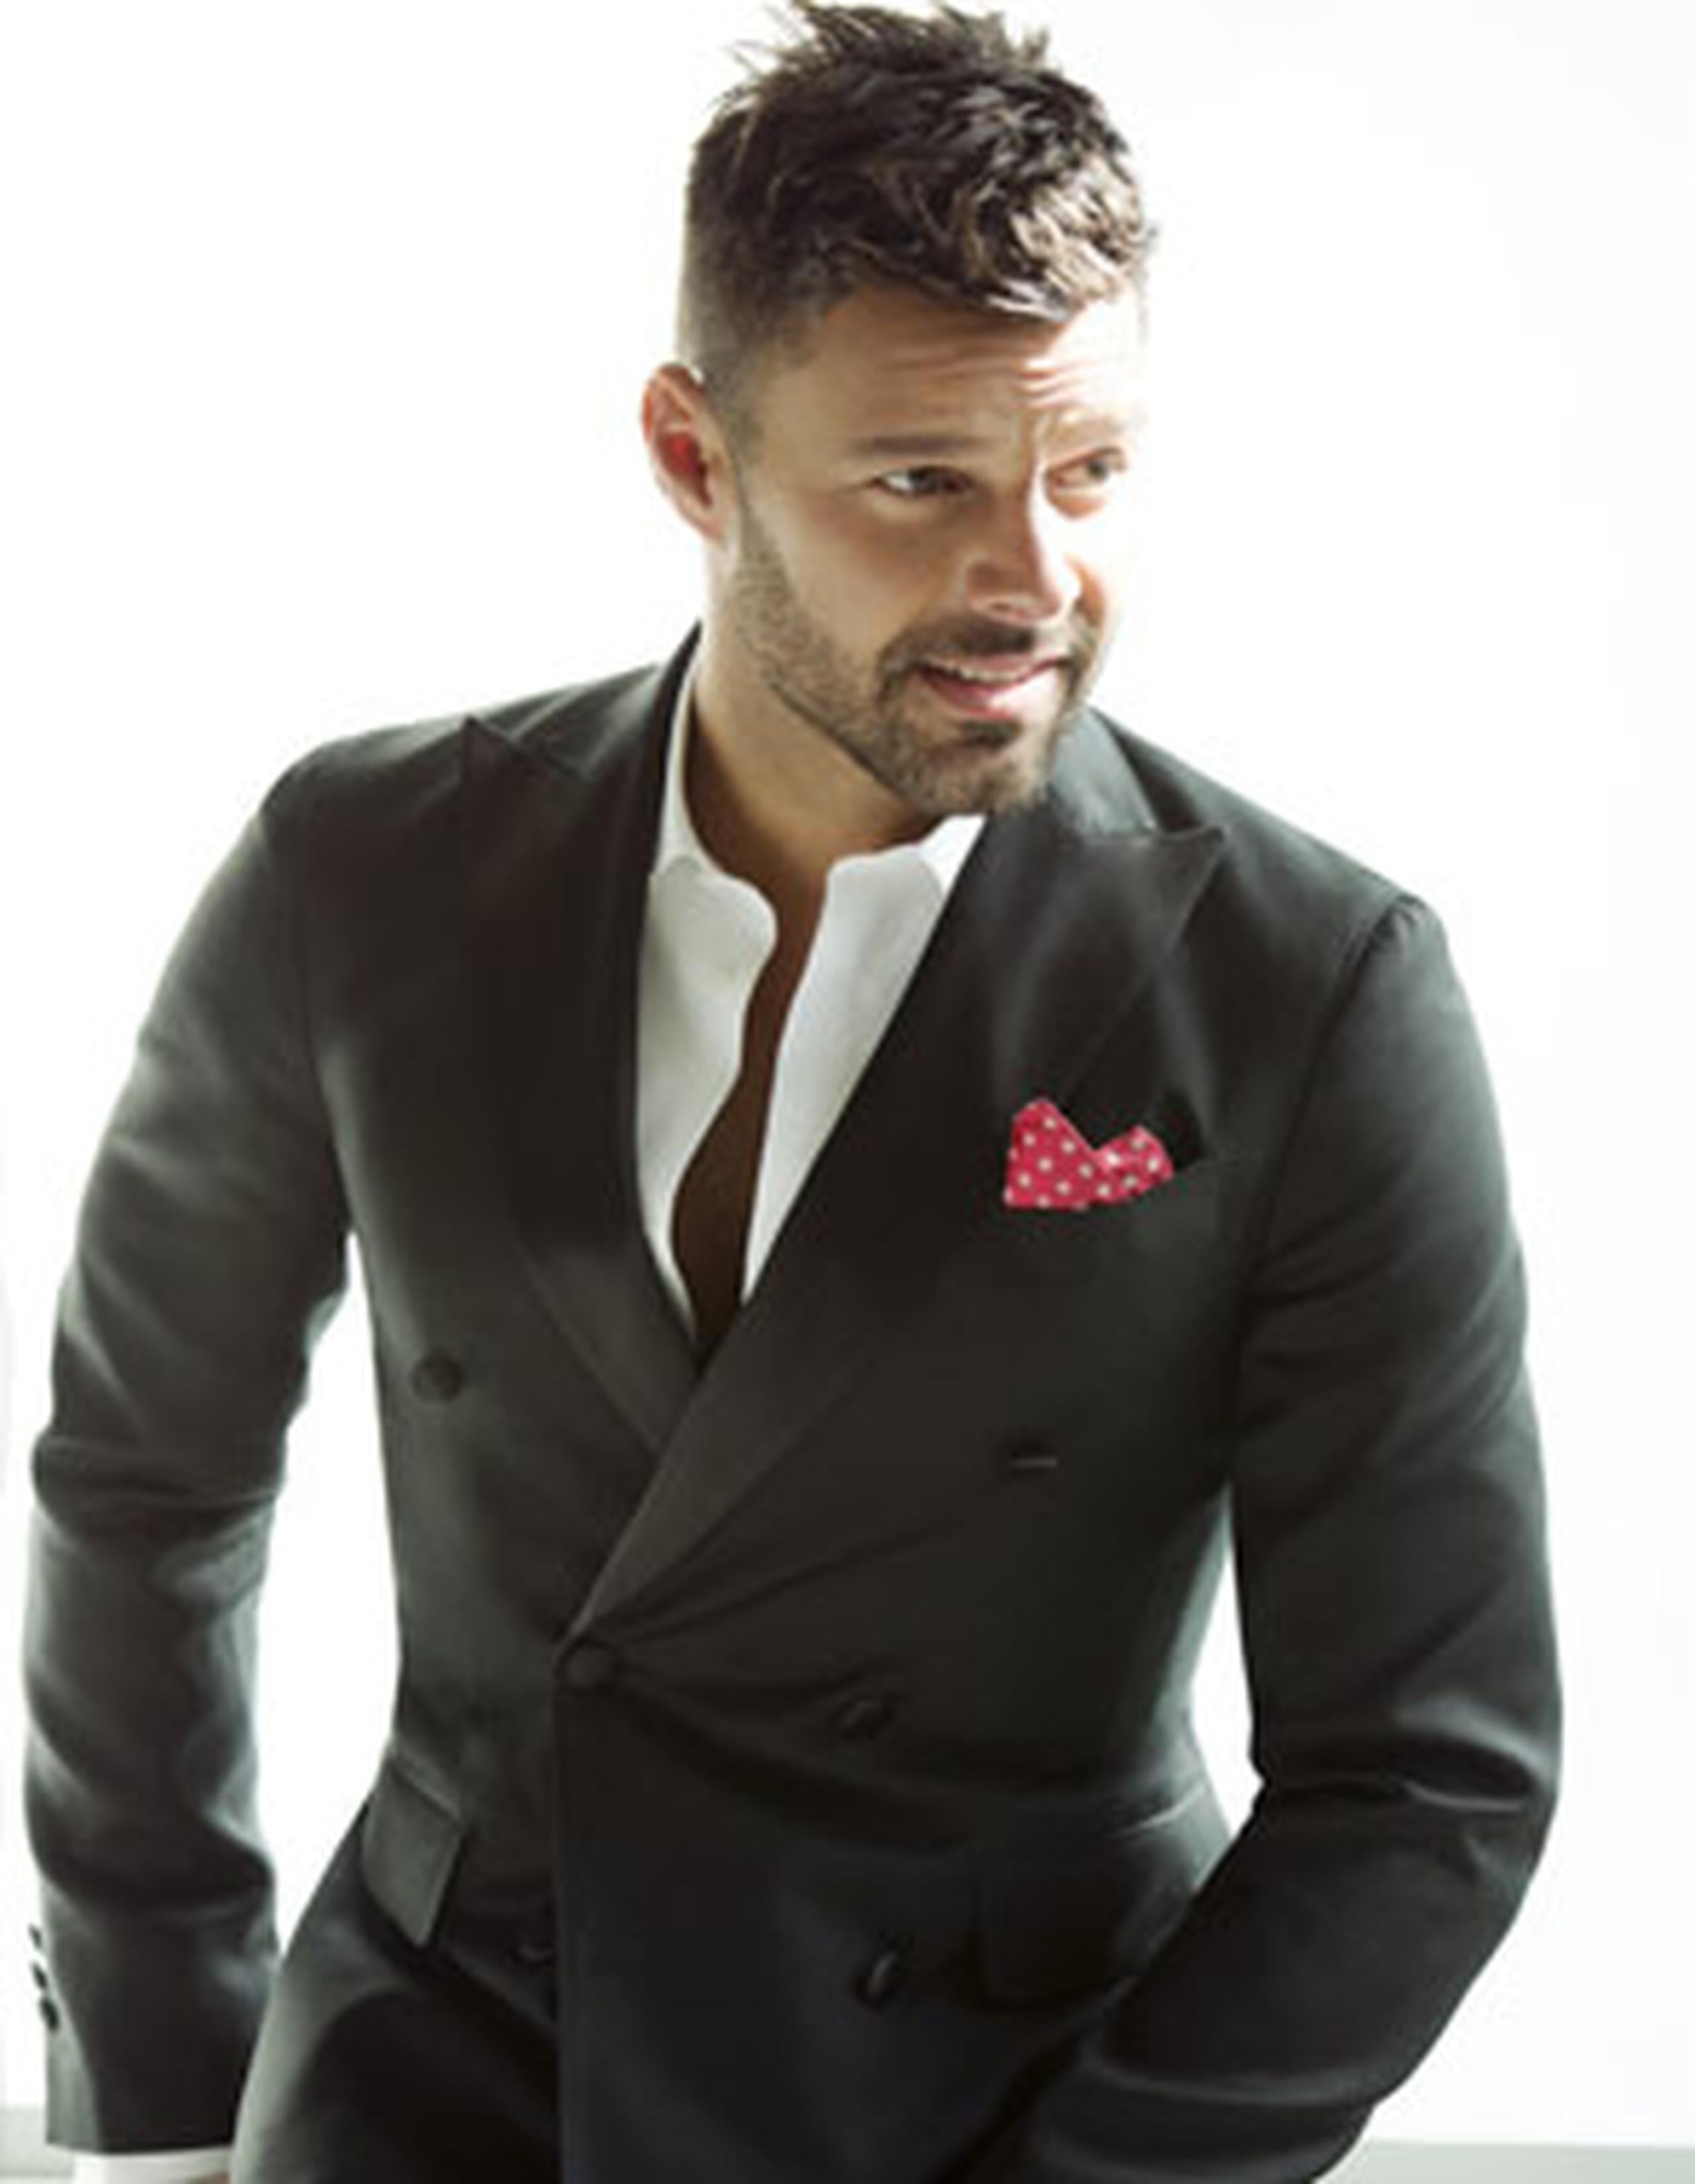 Ricky Martin se encuentra promocionando su disco “A quien quiera escuchar”. (Suministrada)